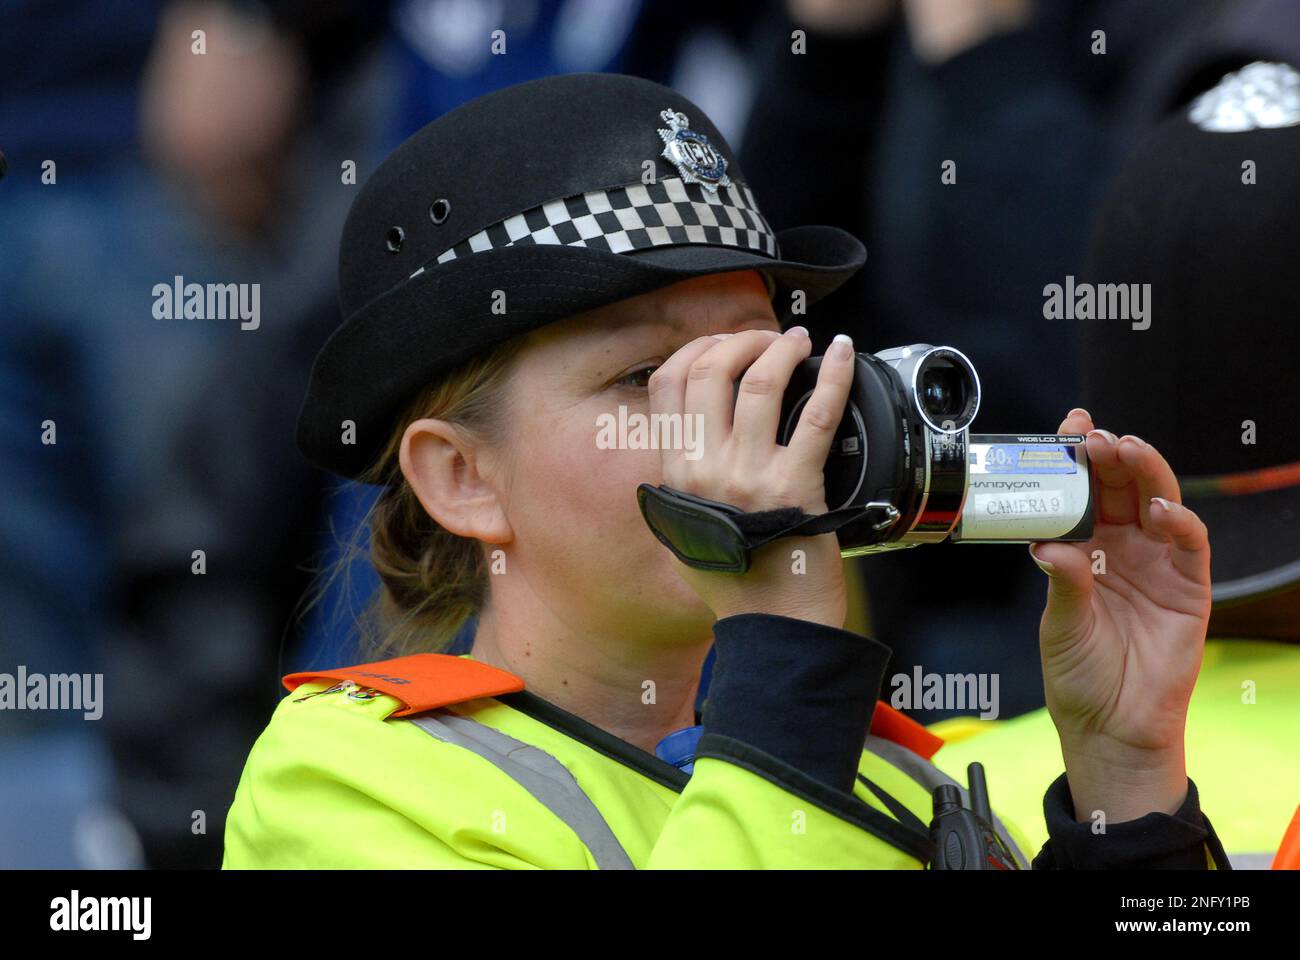 Ufficiale di polizia delle West Midlands che utilizza una videocamera per monitorare i tifosi della folla di calcio West Bromwich Albion v Wolverhampton Wanderers 16/10/2011 Foto Stock